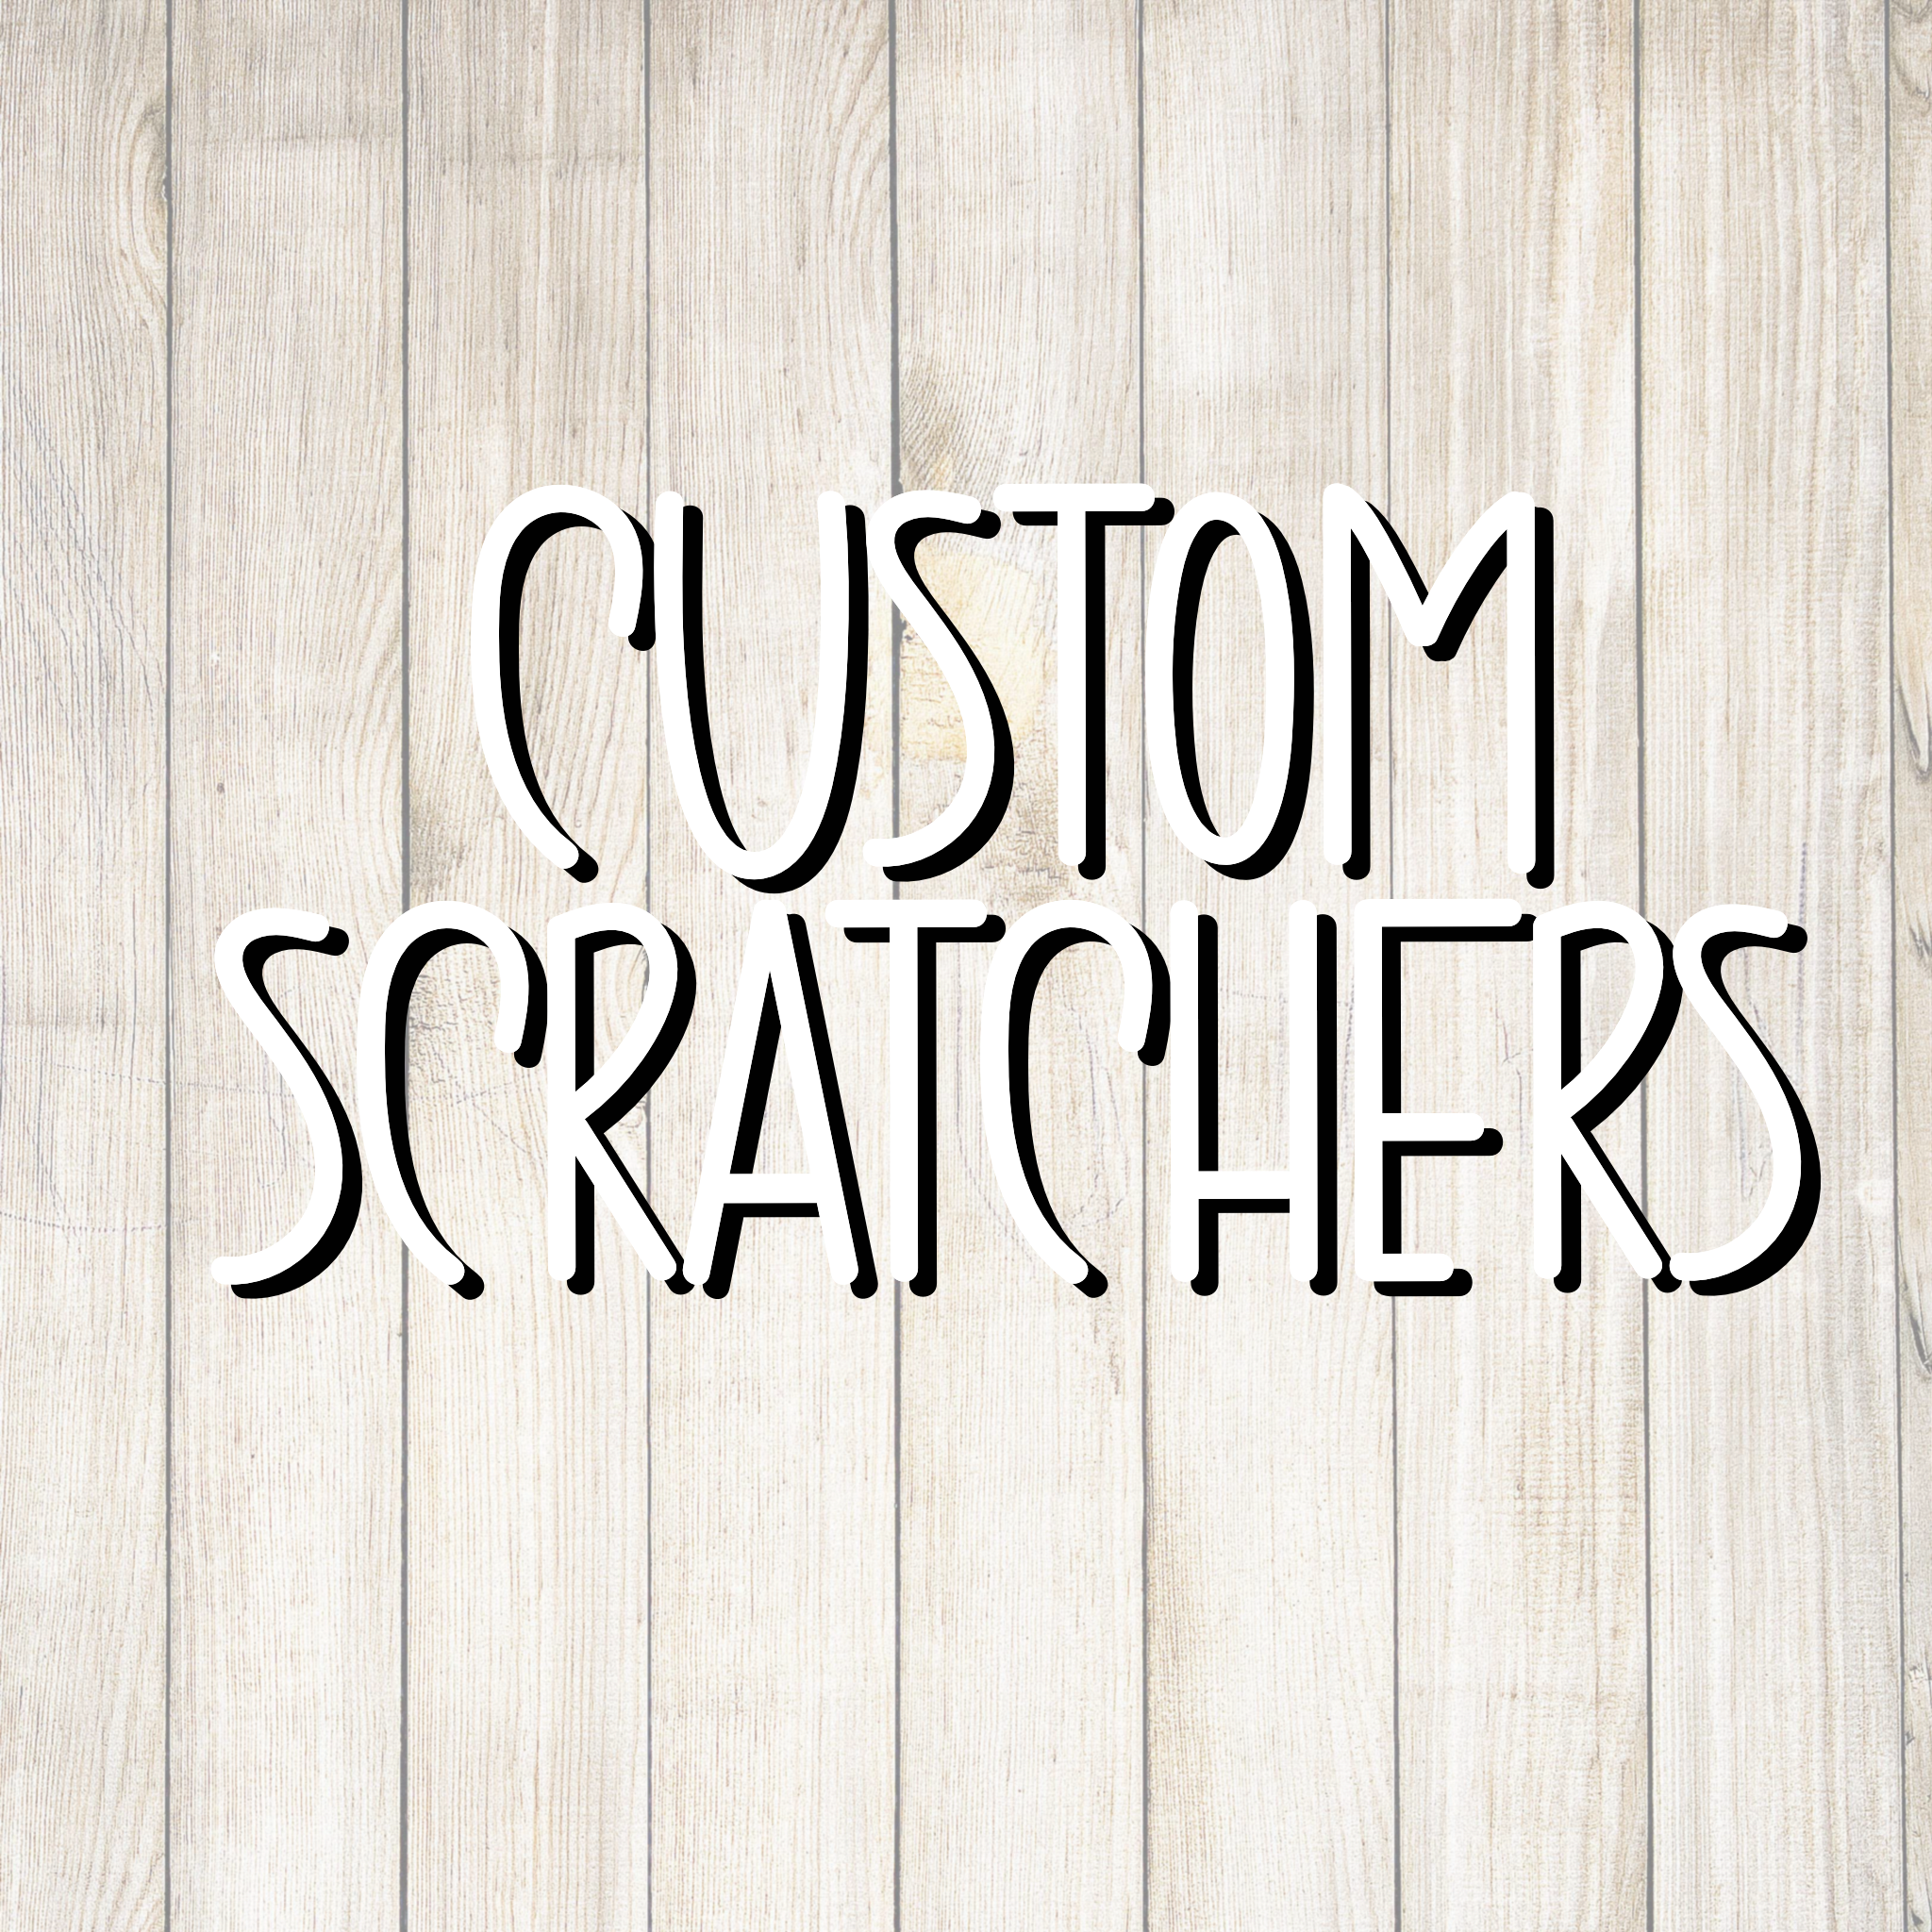 Custom Design Scratcher - Individually Cut